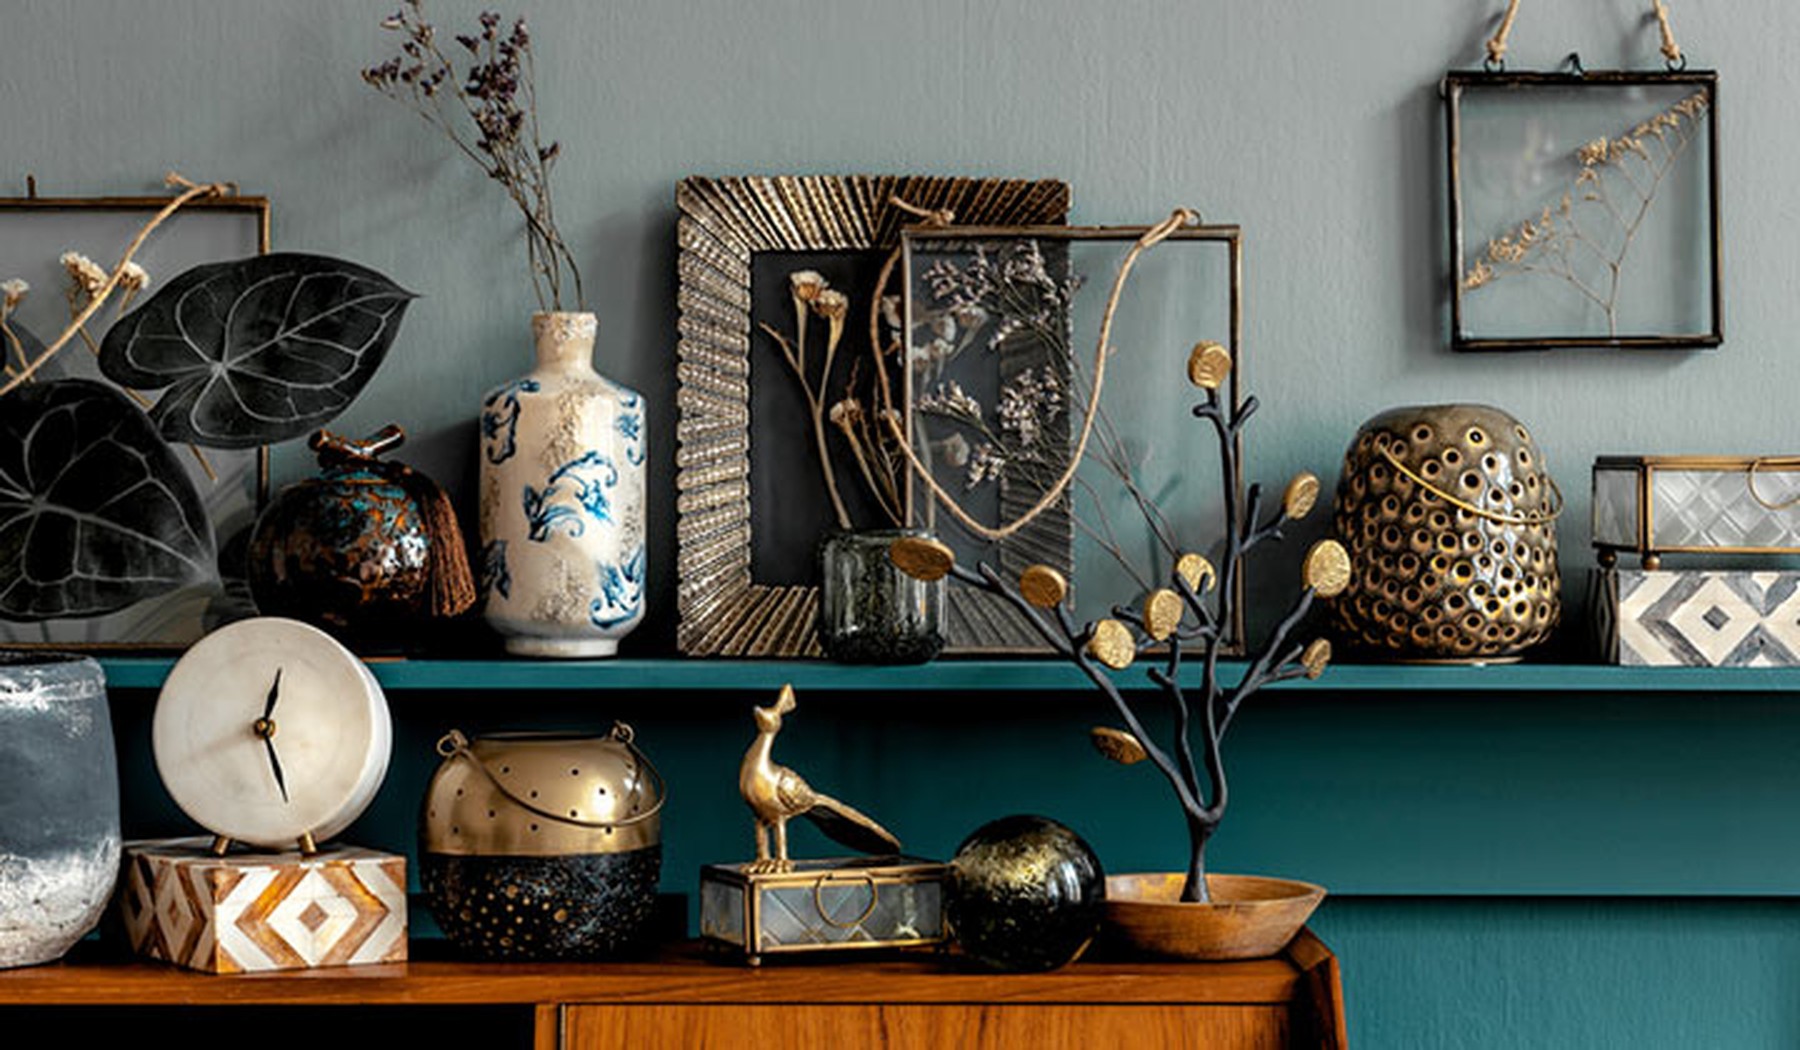 Accesorios de decoración vintage en una balda de madera azul verdosa y un mueble de madera. Hay marcos de fotos, jarrones, esculturas de plantas...